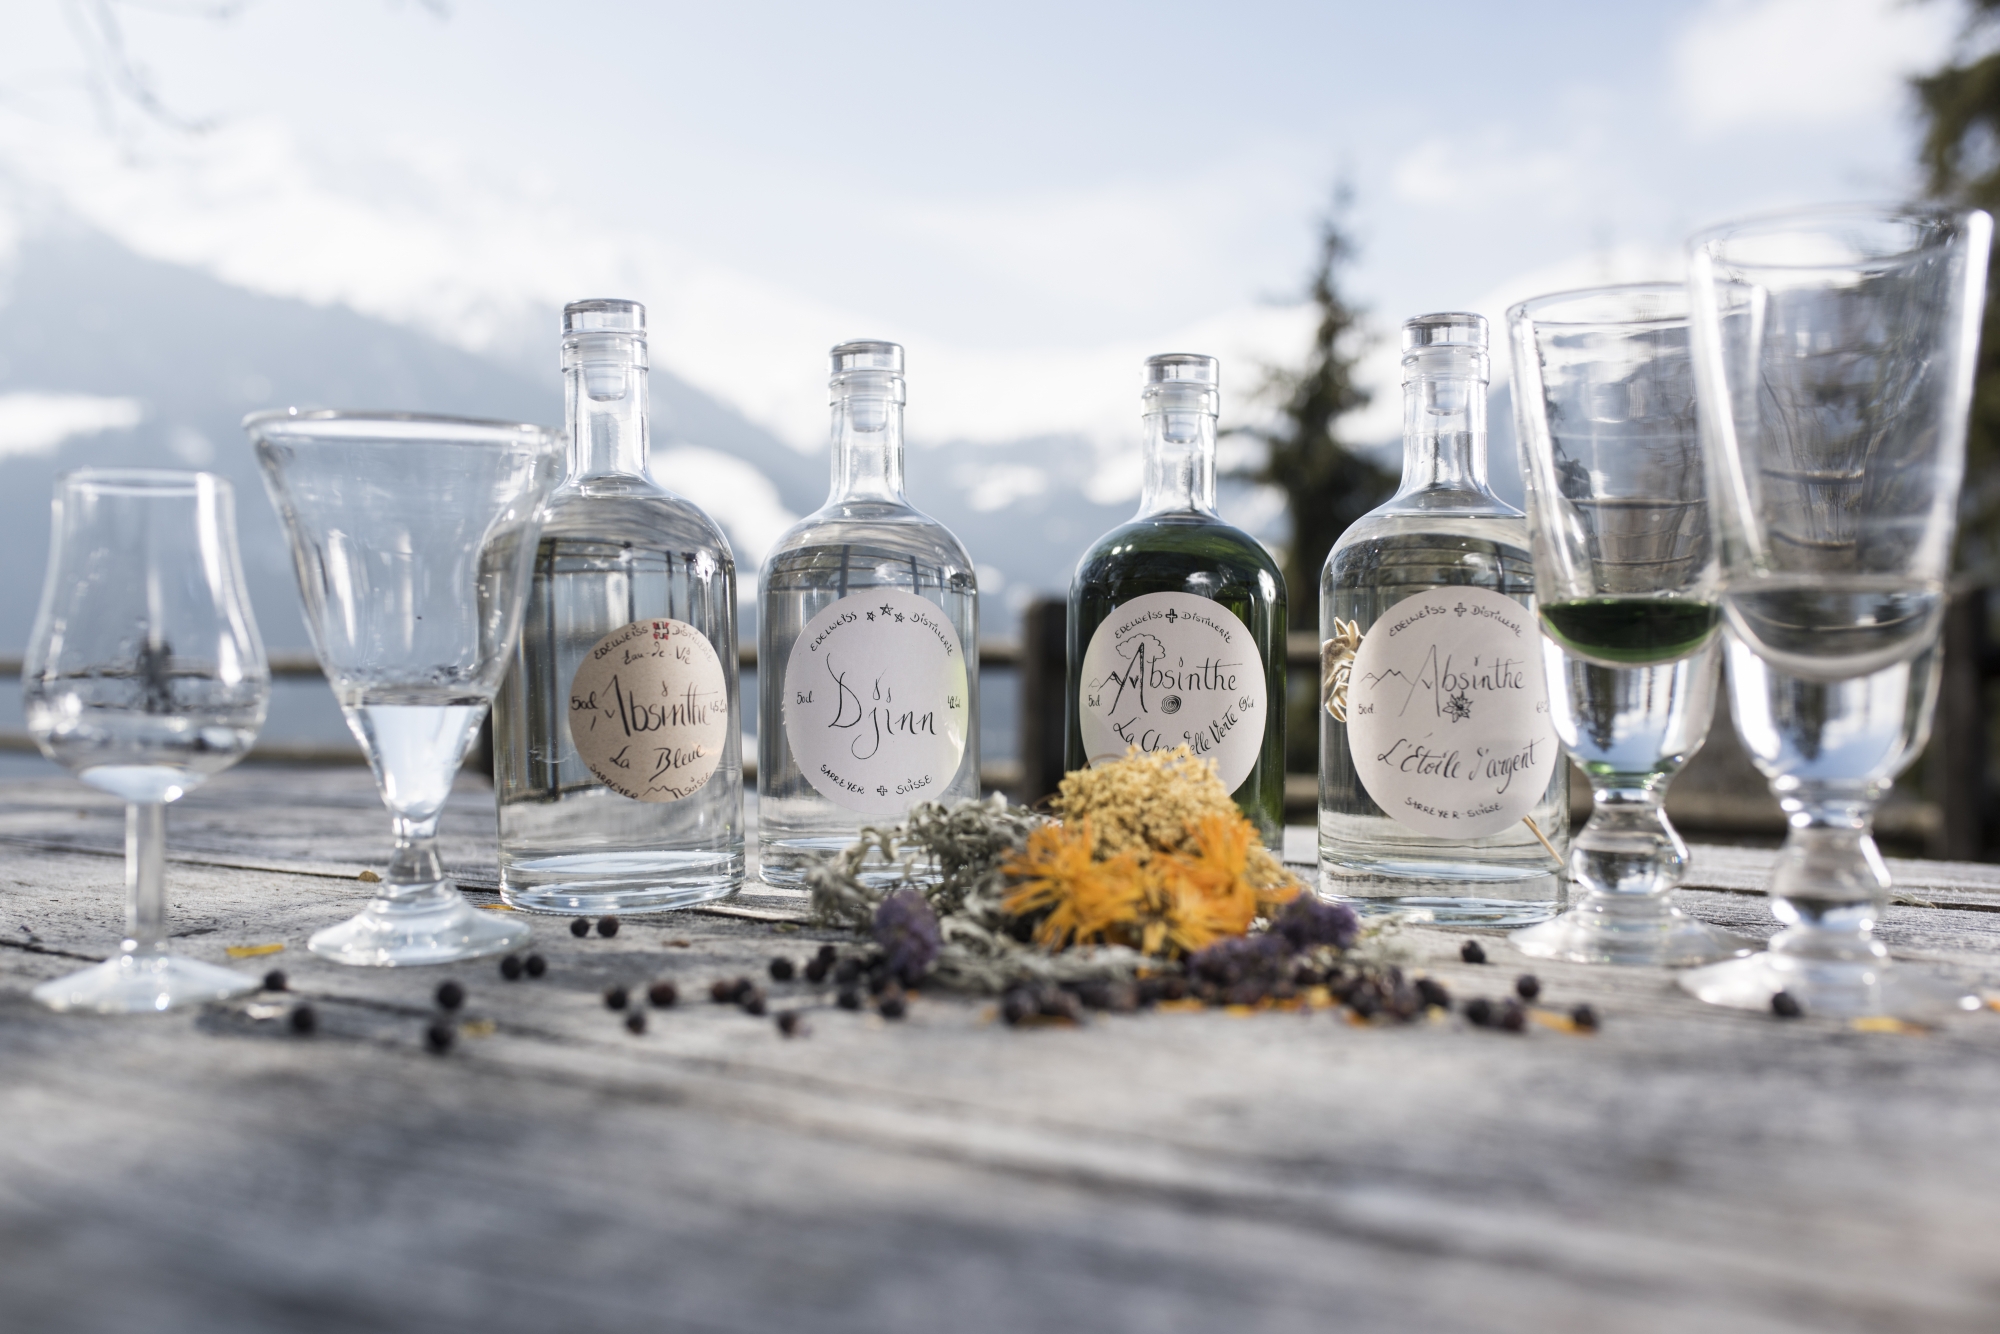 Trois absinthes et un gin floral prennent la pose parmi les calendula, sureau, hysope et genévrier.